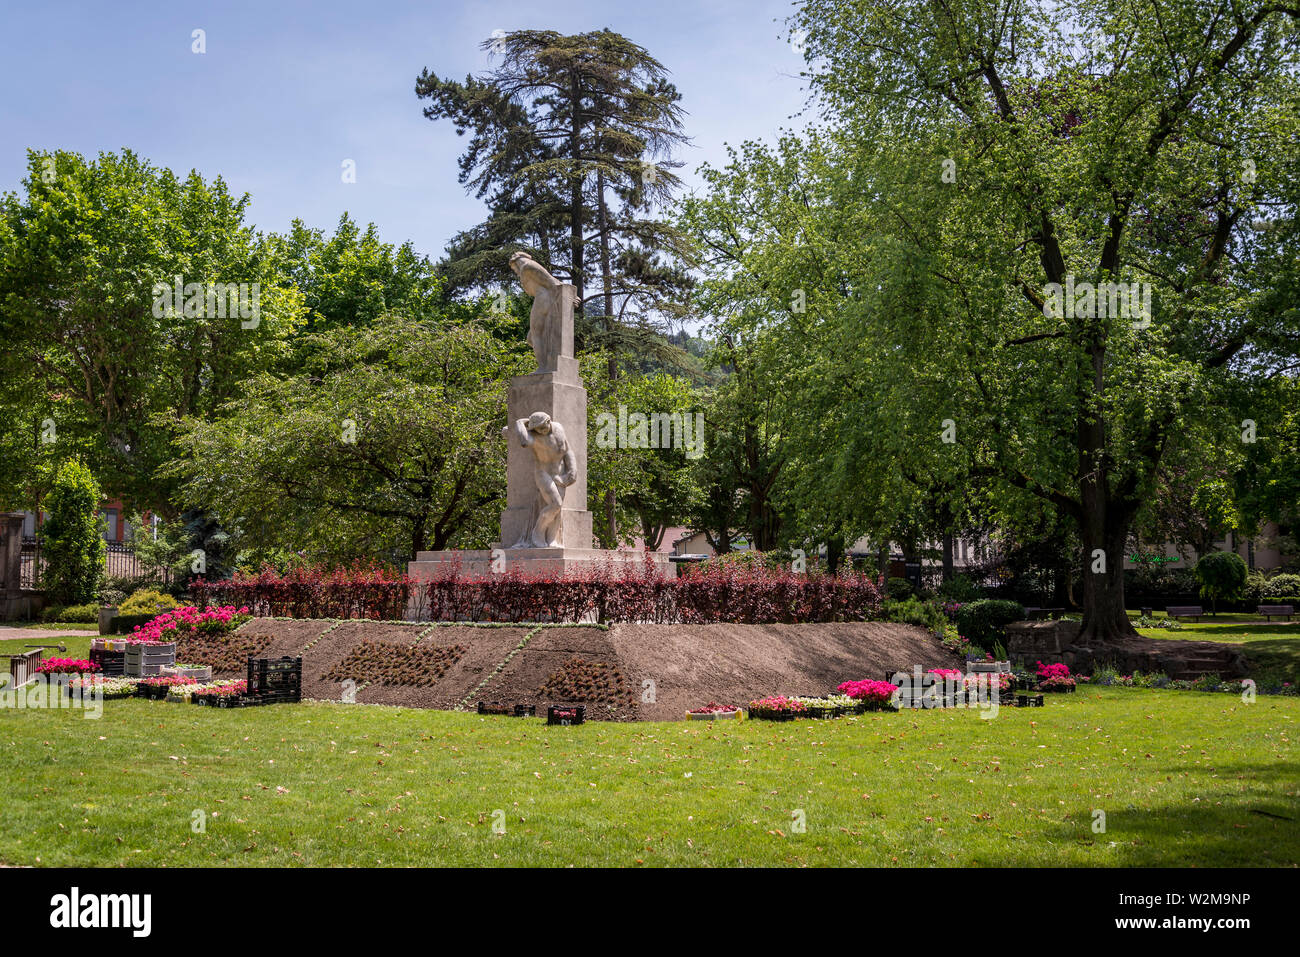 Jardin de ville, città giardino con un monumento di guerra, Vienne, Francia Foto Stock